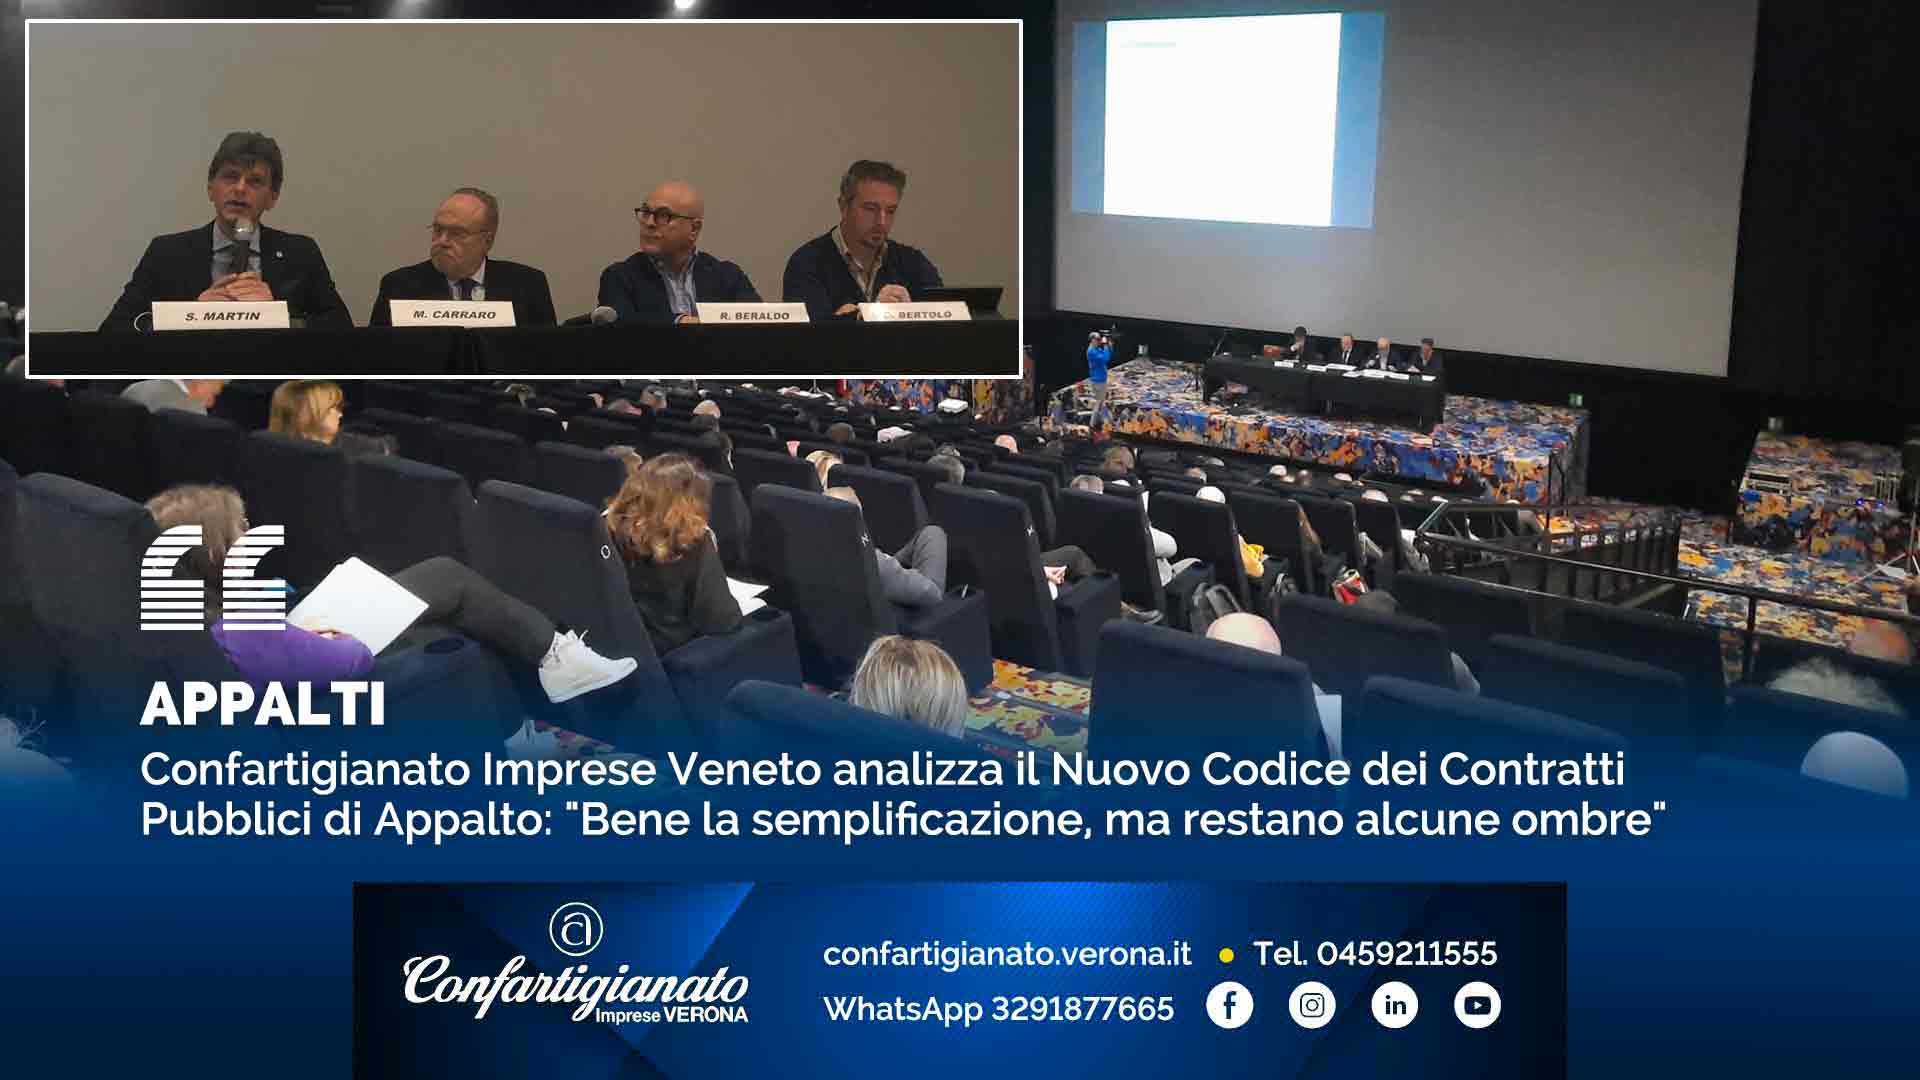 APPALTI – Confartigianato Imprese Veneto analizza il Nuovo Codice dei Contratti Pubblici di Appalto: "Bene la semplificazione, ma restano alcune ombre"